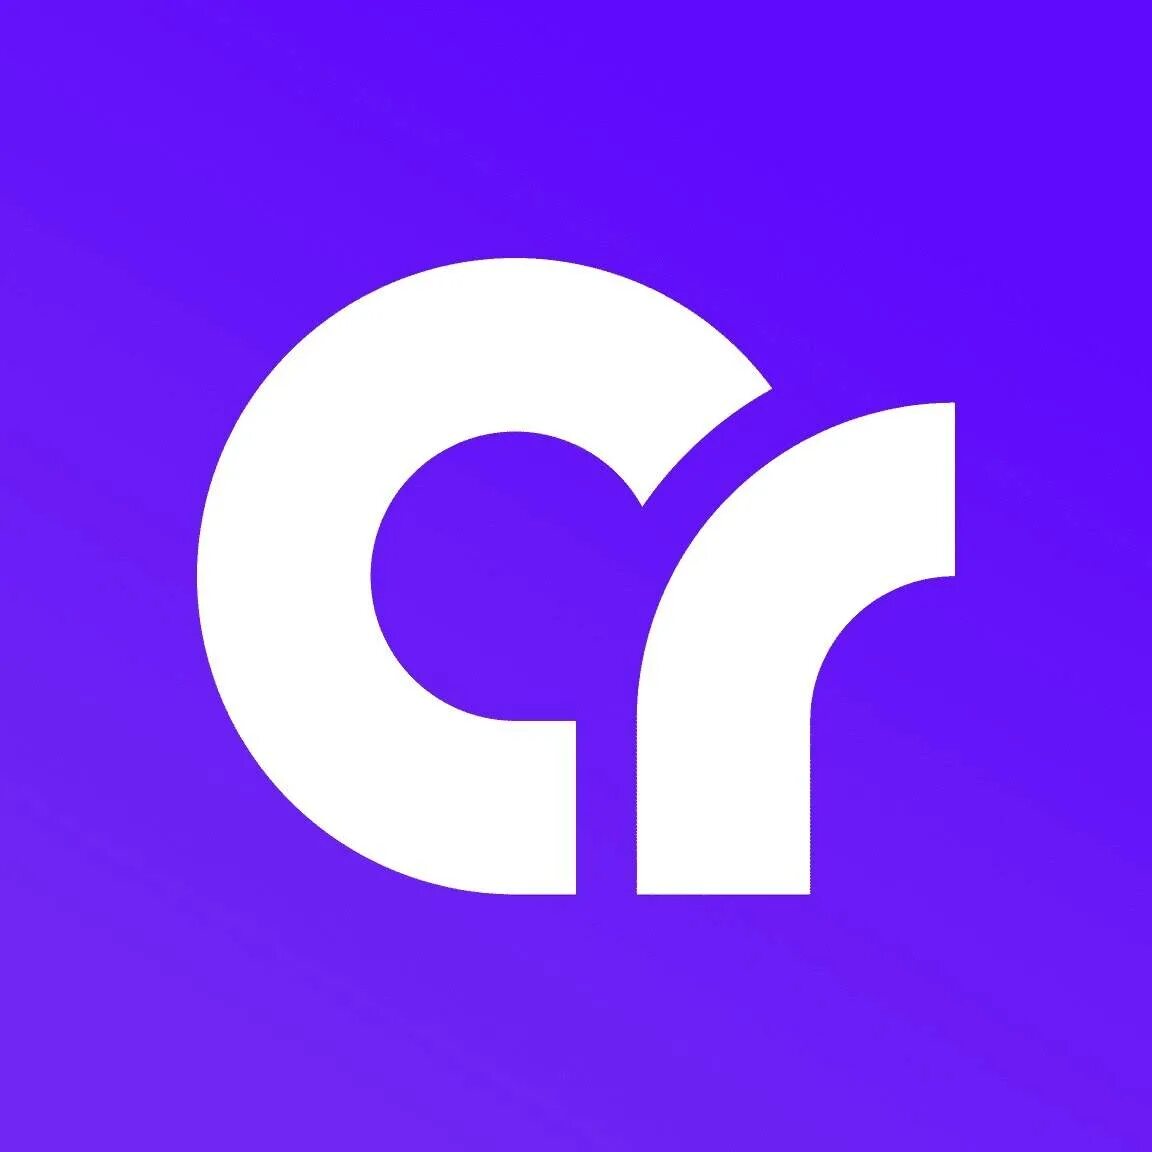 Craftum. Creatium. Creatium лого. Креатиум конструктор. CRAFTUM логотип.